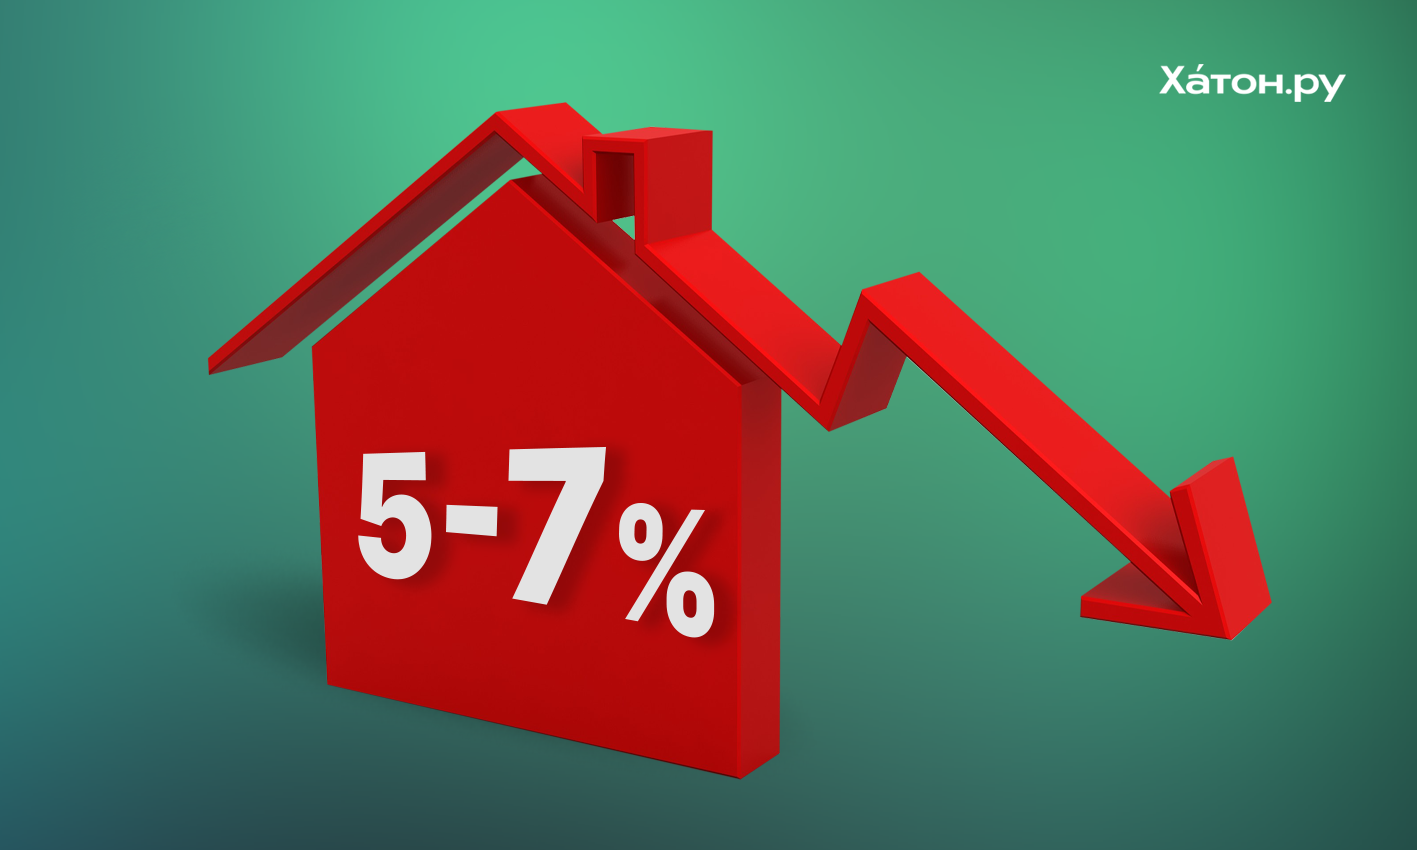 В 2022 году в России прогнозируется снижение цен на жилье на 5-7 процентов